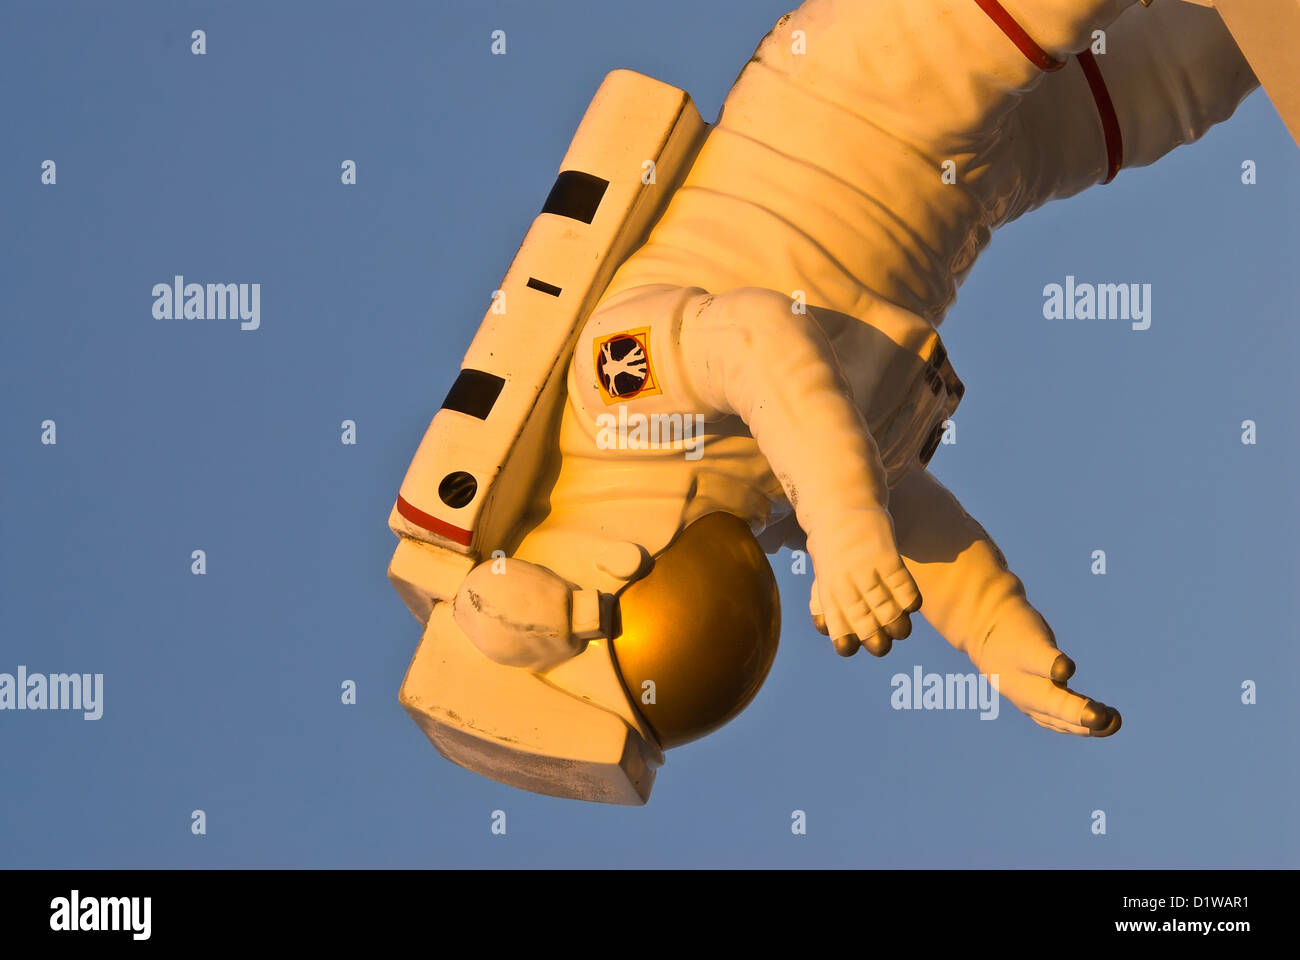 Modell der NASA-Astronauten schweben auf dem Kopf stehend im Raum Schwerelosigkeit Kennedy Space Center Visitor Center, Florida Stockfoto